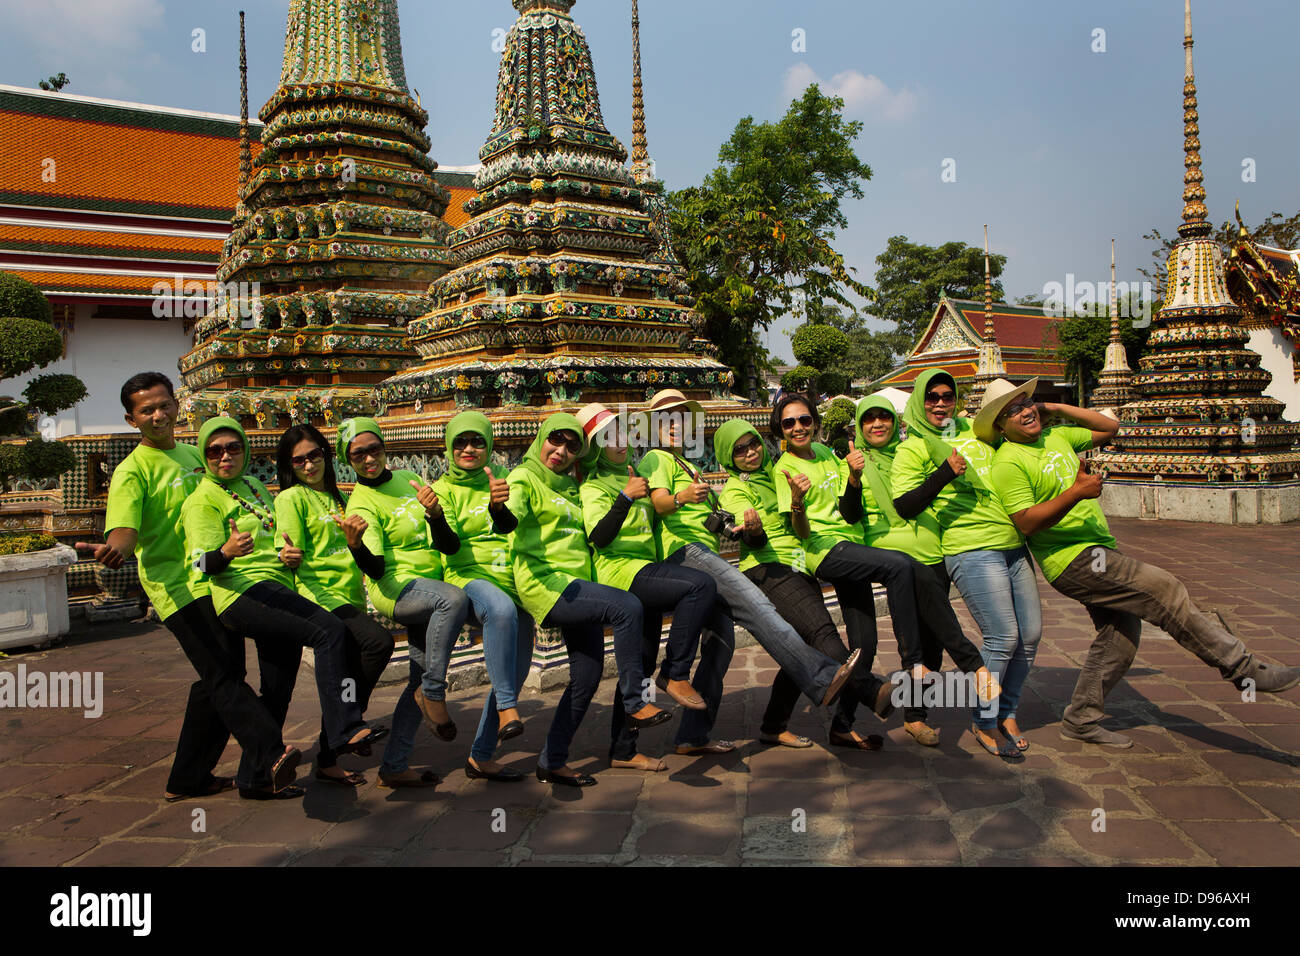 Les travailleurs musulmans provenant d'une compagnie d'assurance tous vêtus de T-shirts de marque posent pour une photo de groupe à l'intérieur du temple de Wat Pho à Ba Banque D'Images